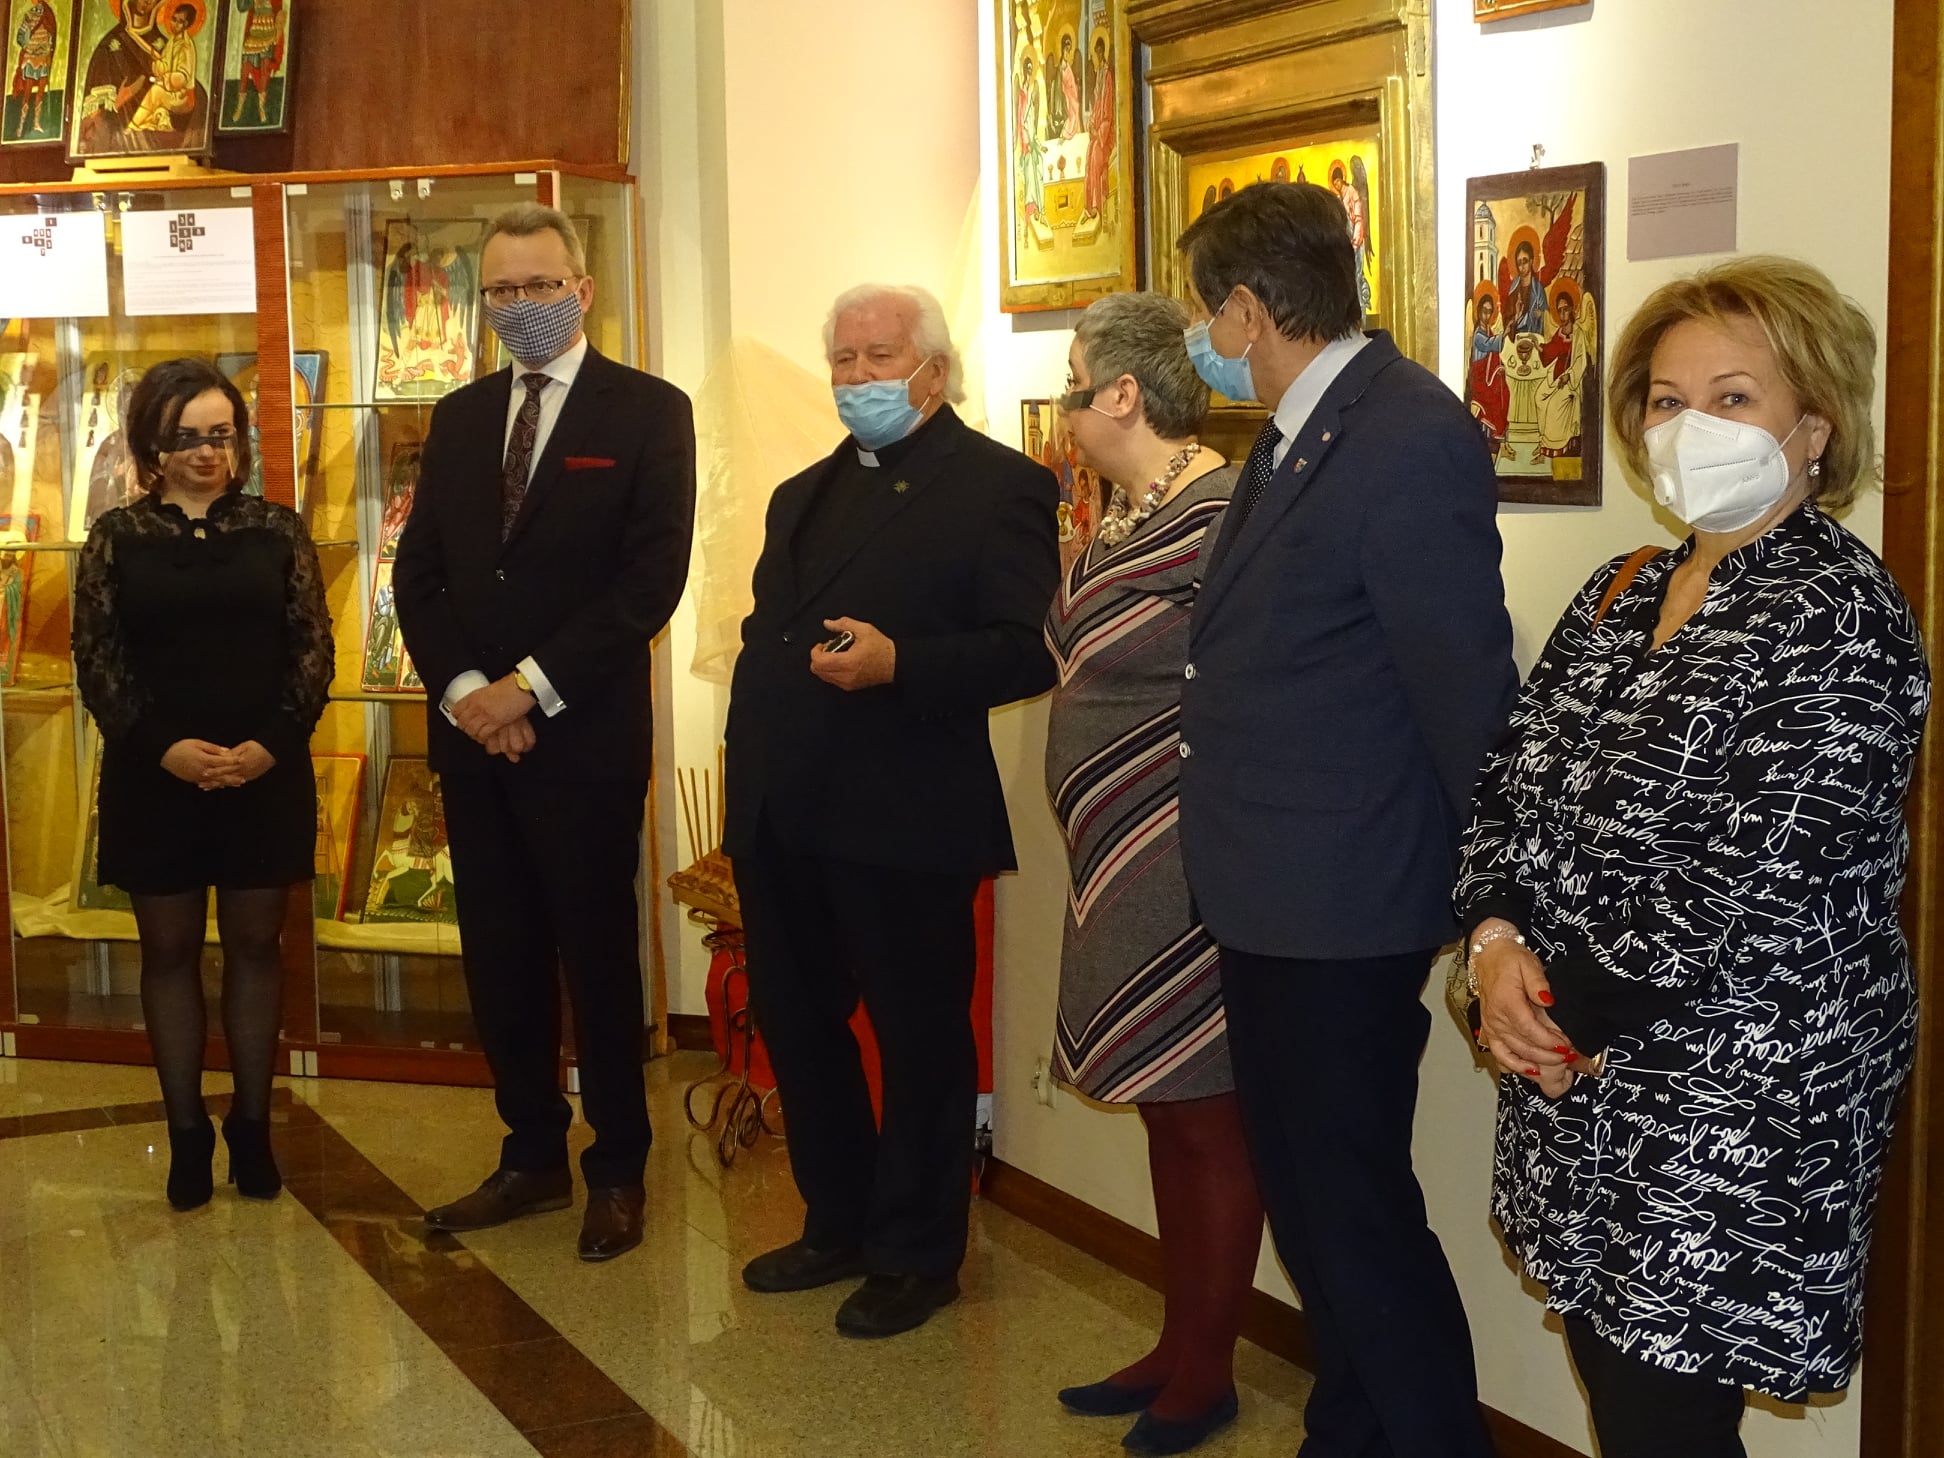 W ramach jubileuszu miasta odbył się także wernisaż wystawy księdza Stanisława Drąga pod tytułem „Oblicze Boga”.